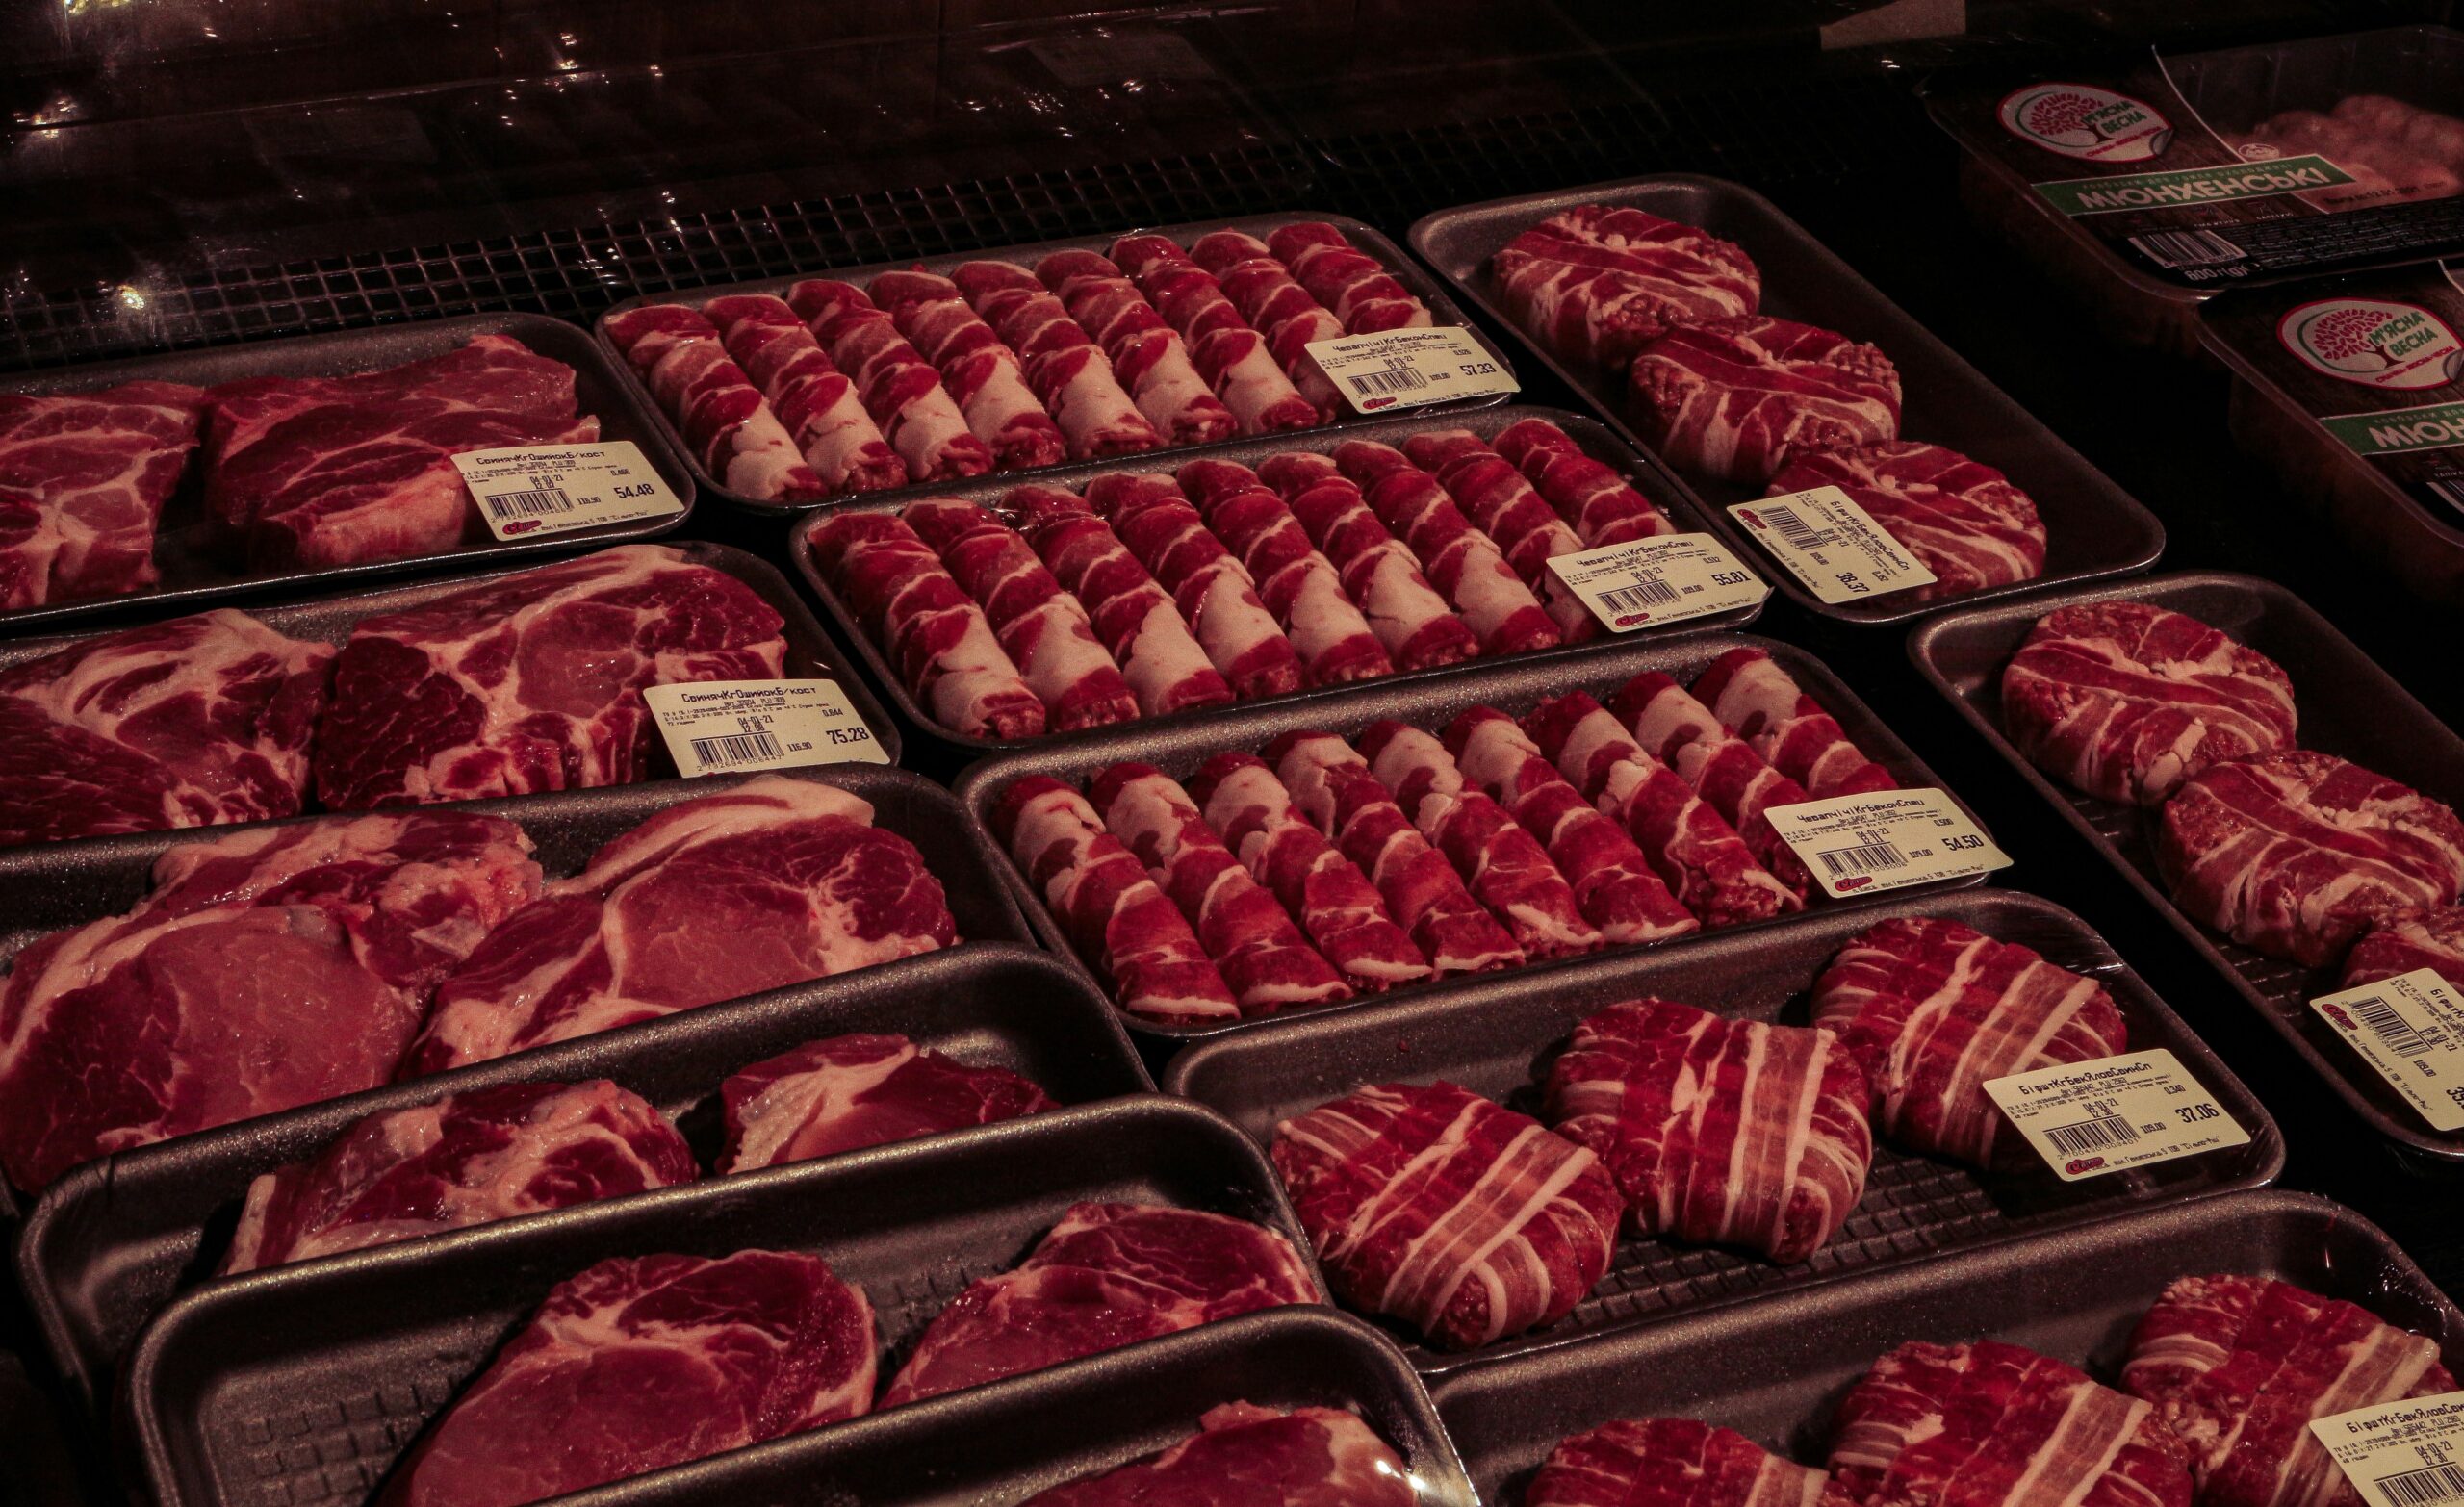 Entdecken Sie die besten Fleischprodukte und Rezepte mit unserer großen Auswahl an Premium-Fleisch und Kochideen.